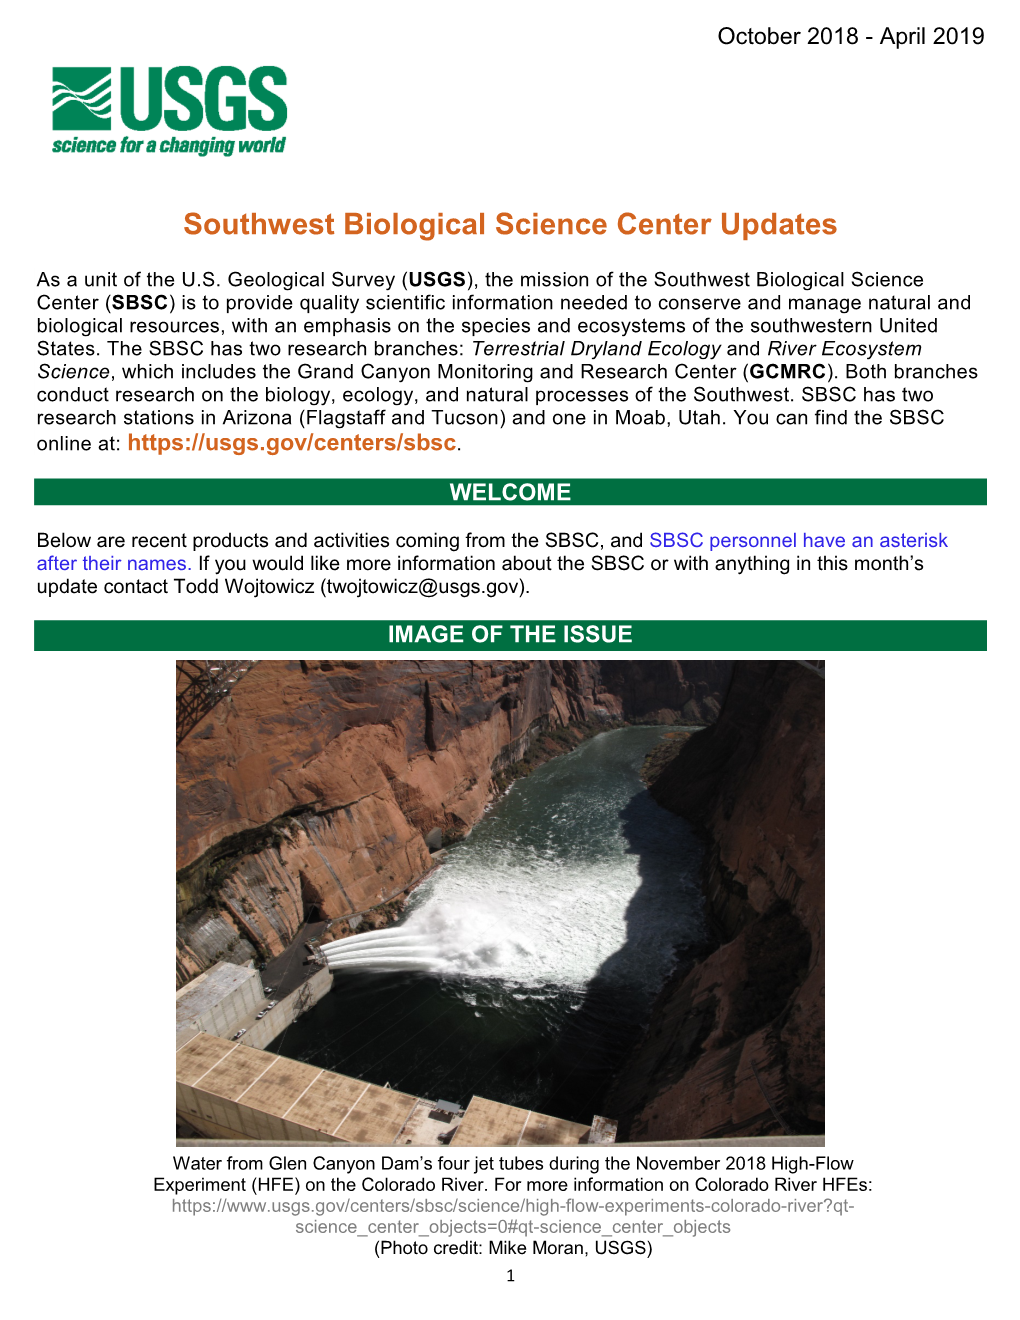 Southwest Biological Science Center Updates